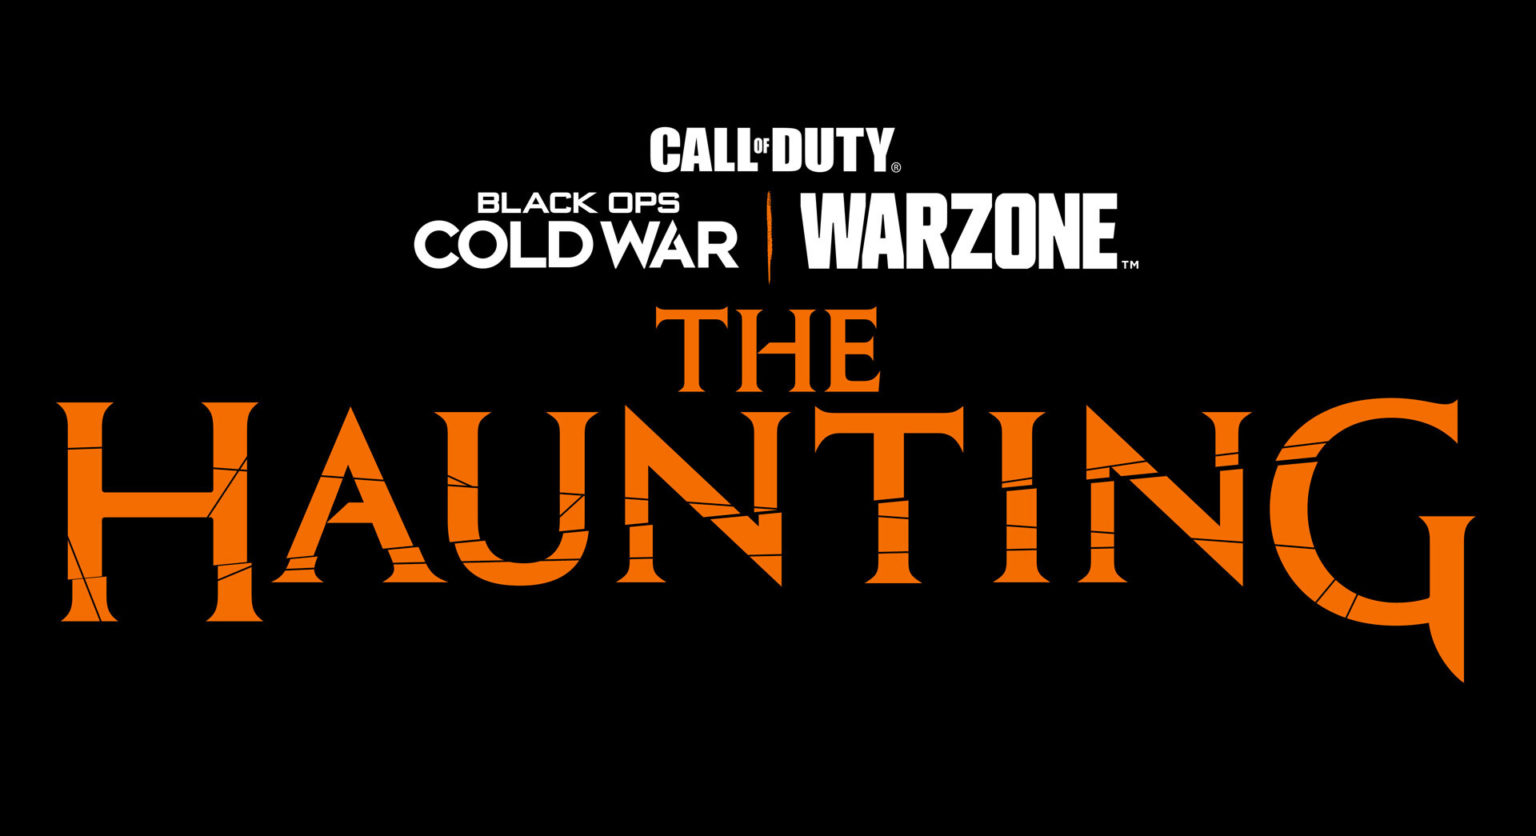 In de teaservideo 'The Haunting' van Call of Duty spelen Faze Swagg en Ghostface uit Scream!